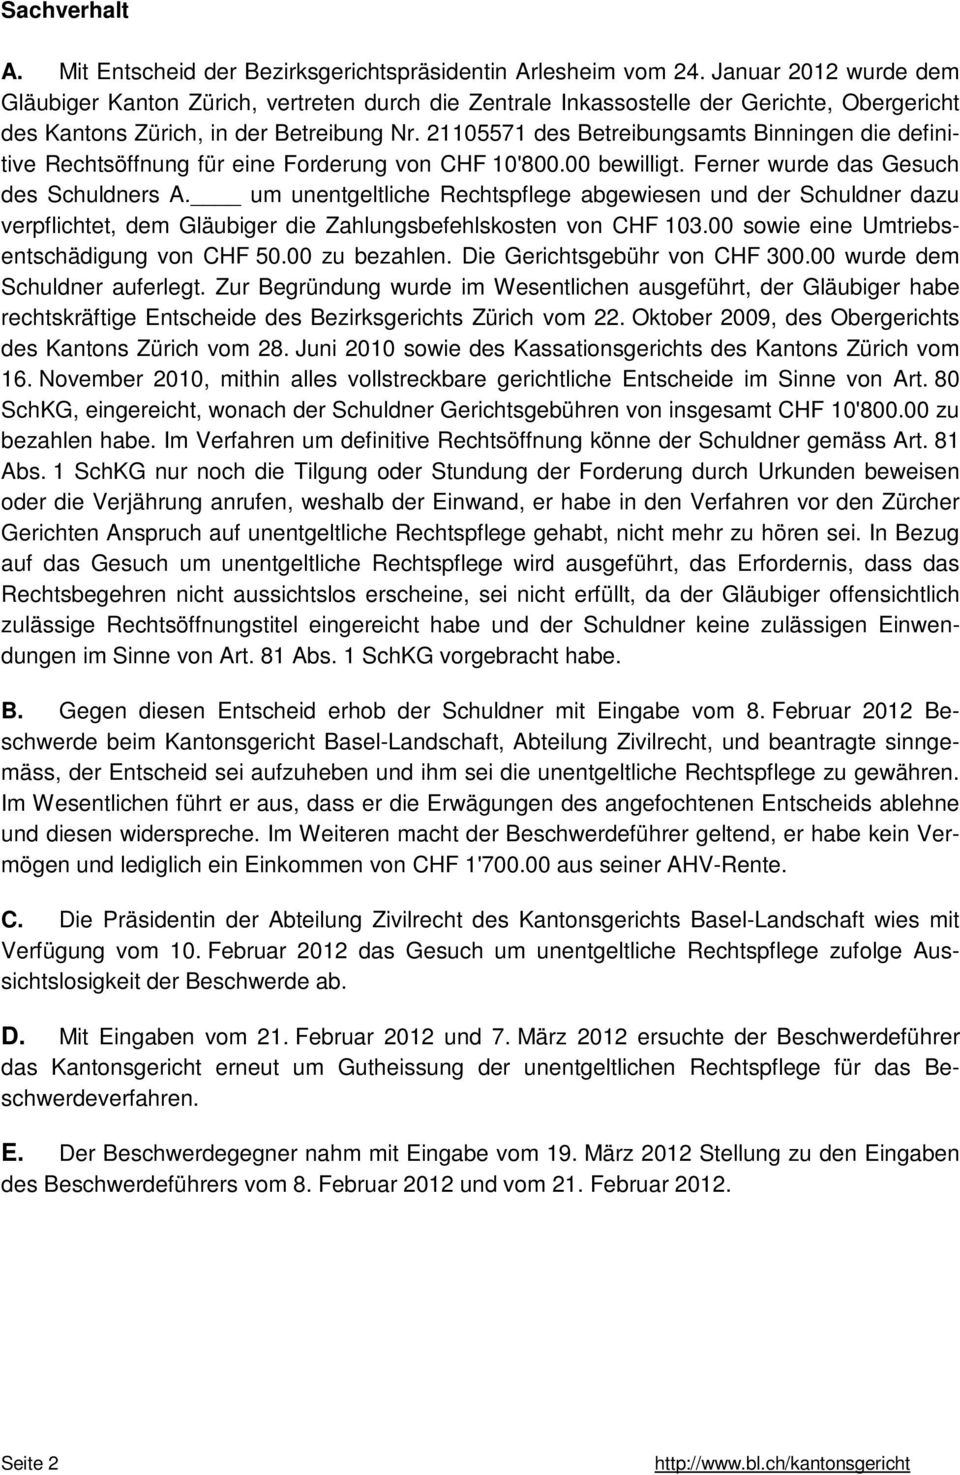 21105571 des Betreibungsamts Binningen die definitive Rechtsöffnung für eine Forderung von CHF 10'800.00 bewilligt. Ferner wurde das Gesuch des Schuldners A.